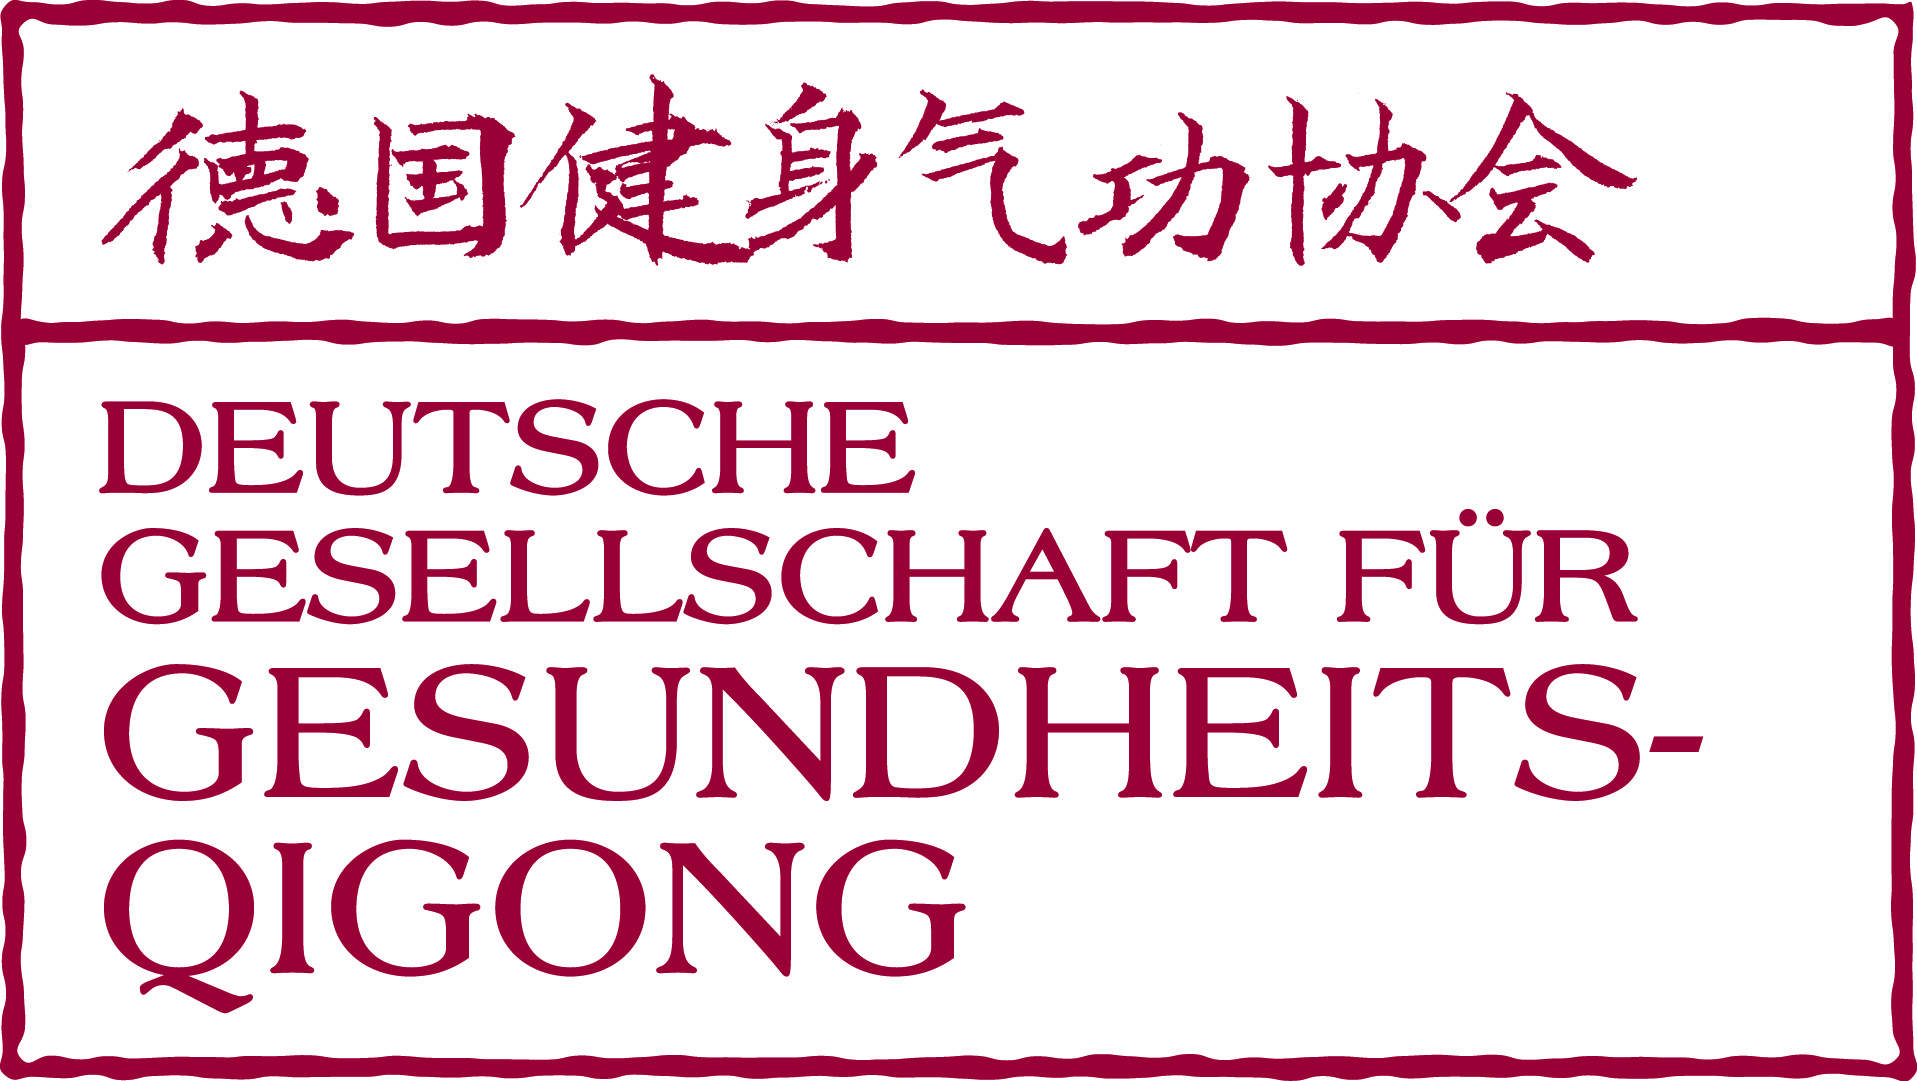 Deutsche Gesellschaft für Gesundheits QiGong